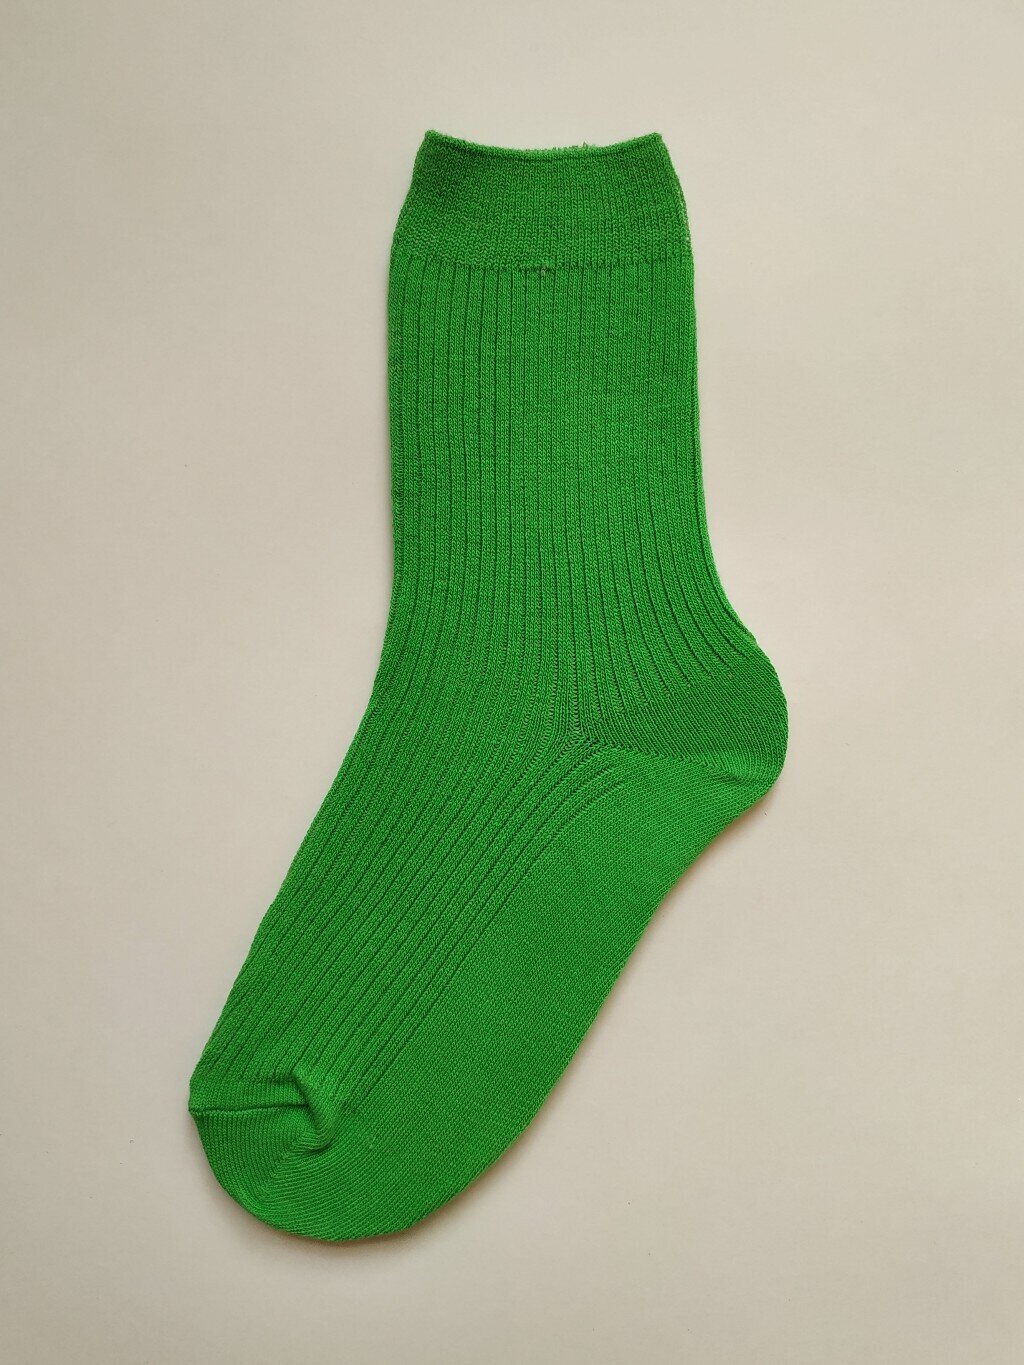 Носки из хлопка ярко-зеленого цвета